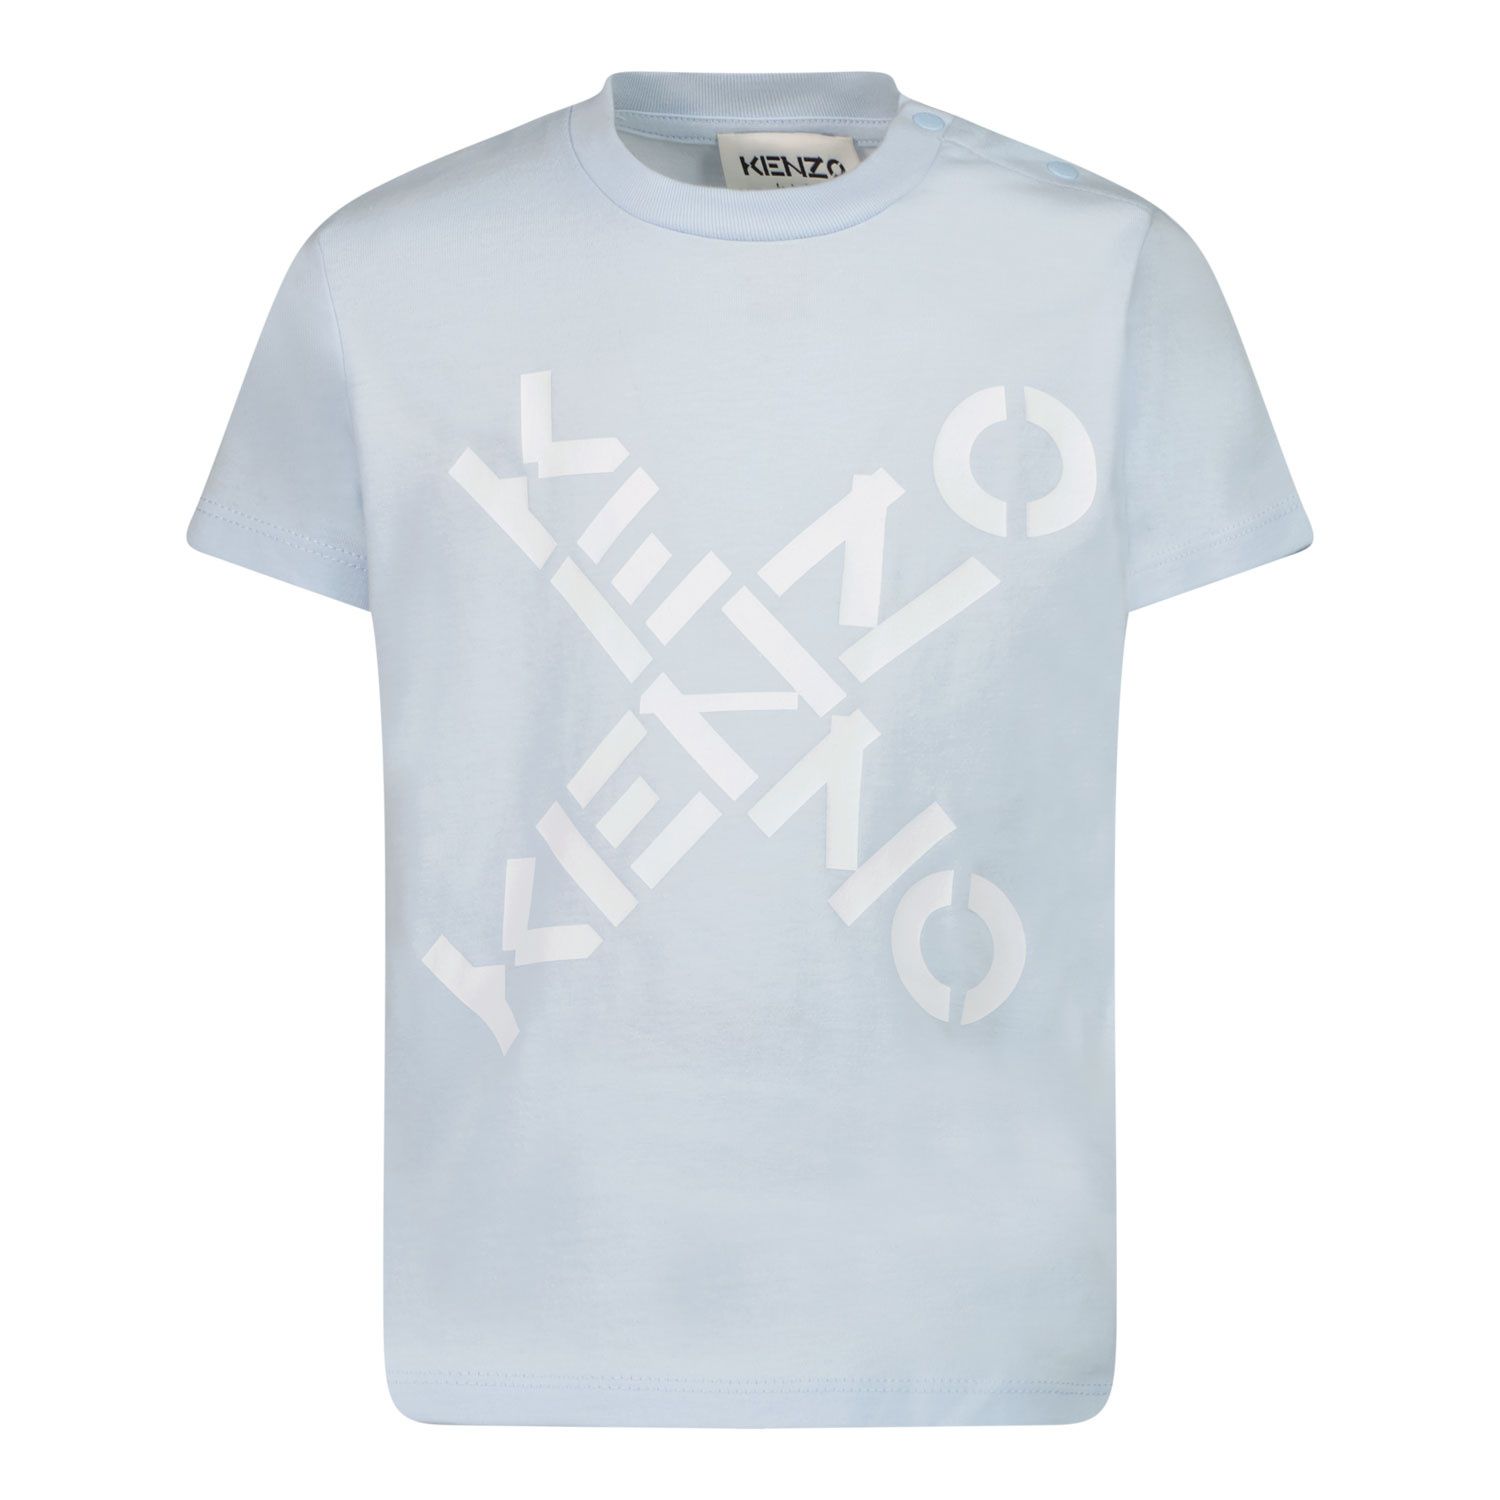 Afbeelding van Kenzo K05395 baby t-shirt licht blauw